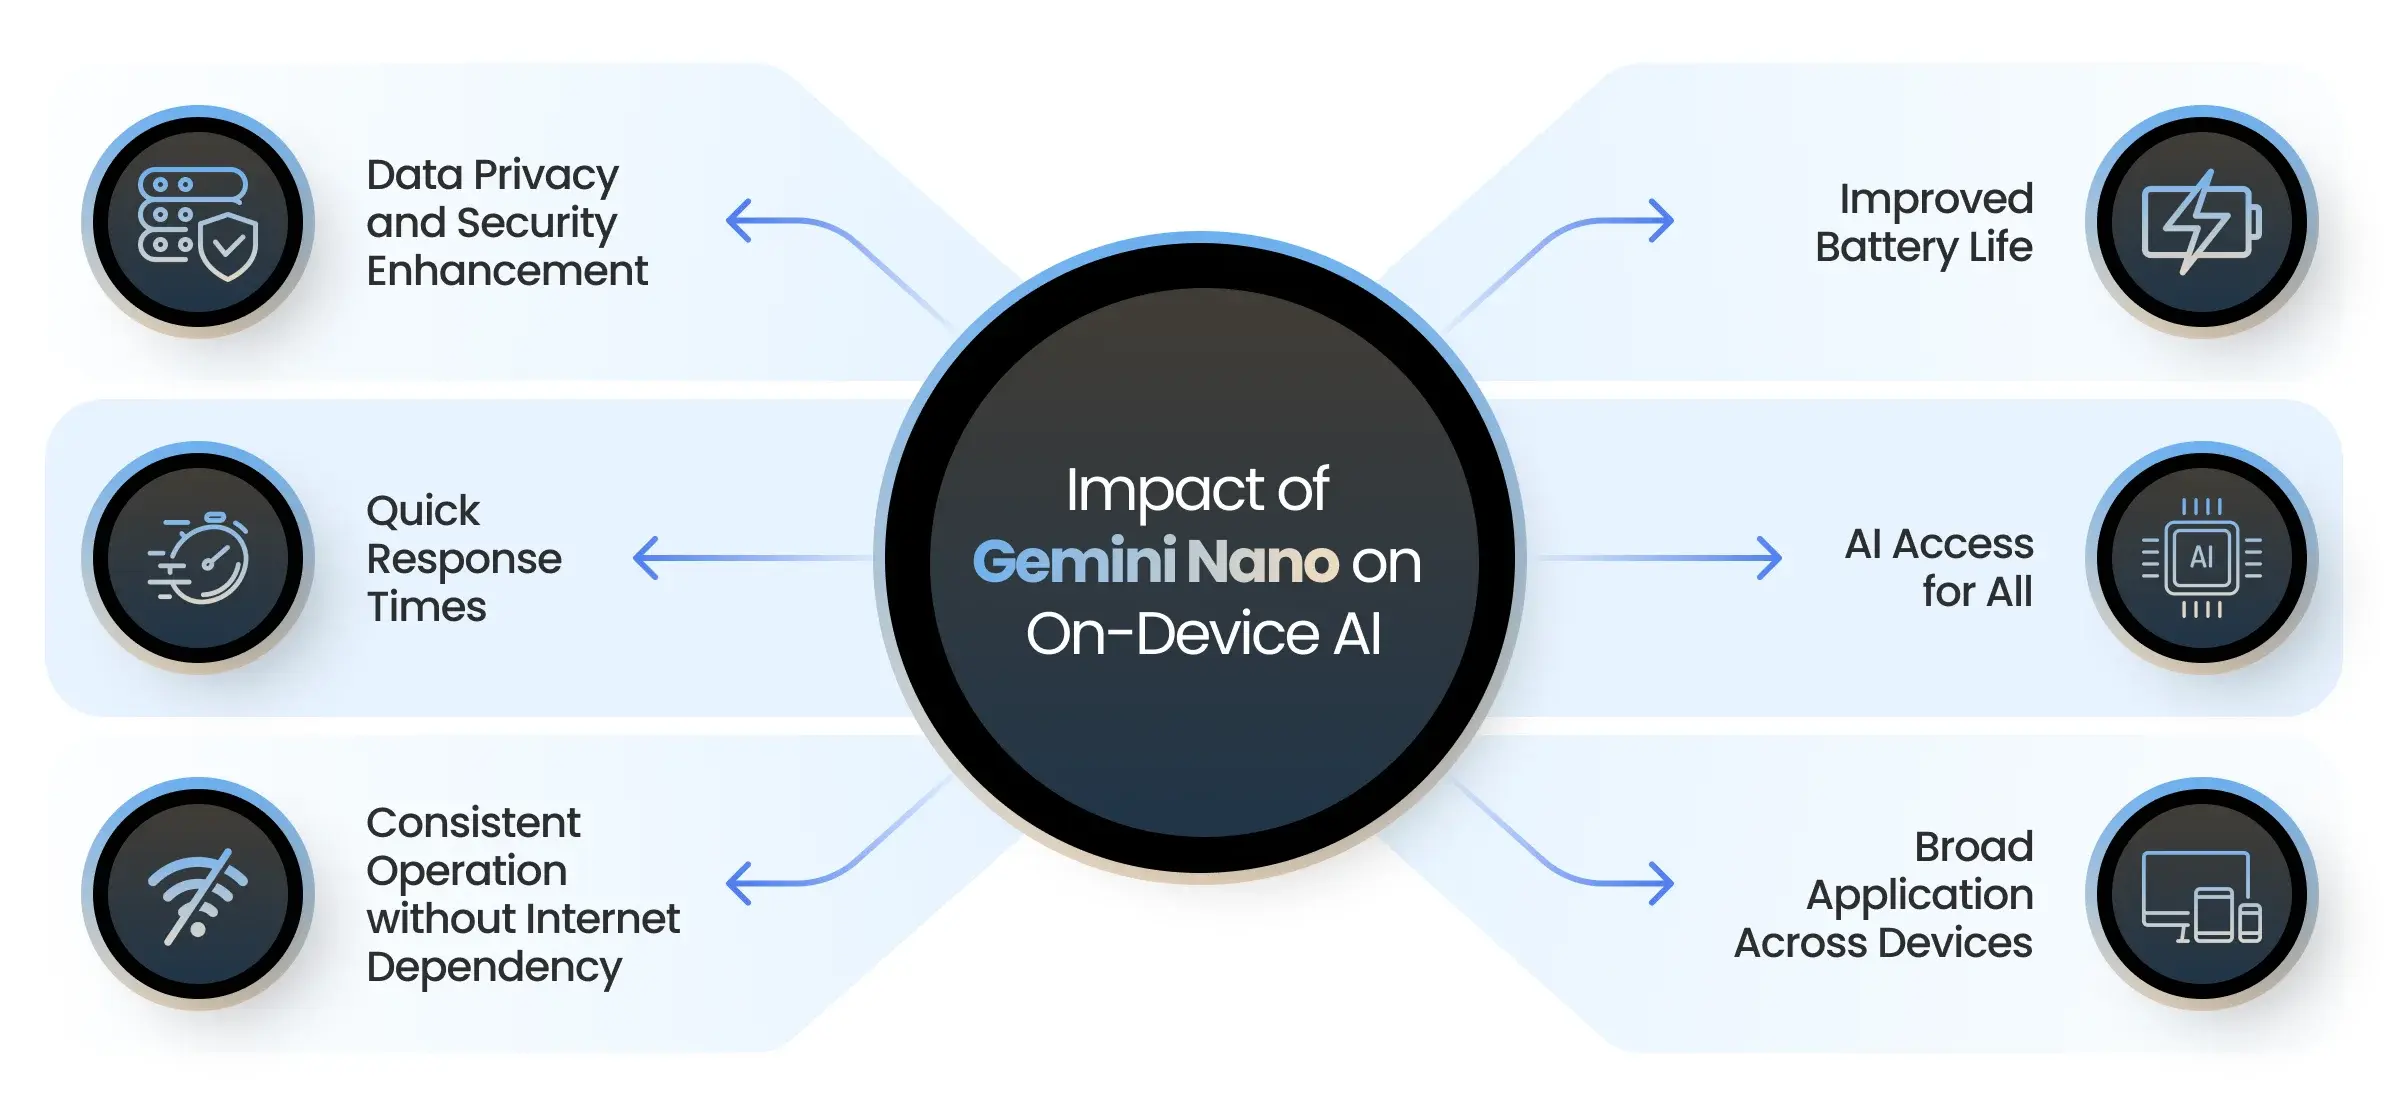 Impact of Gemini Nano on On-Device AI